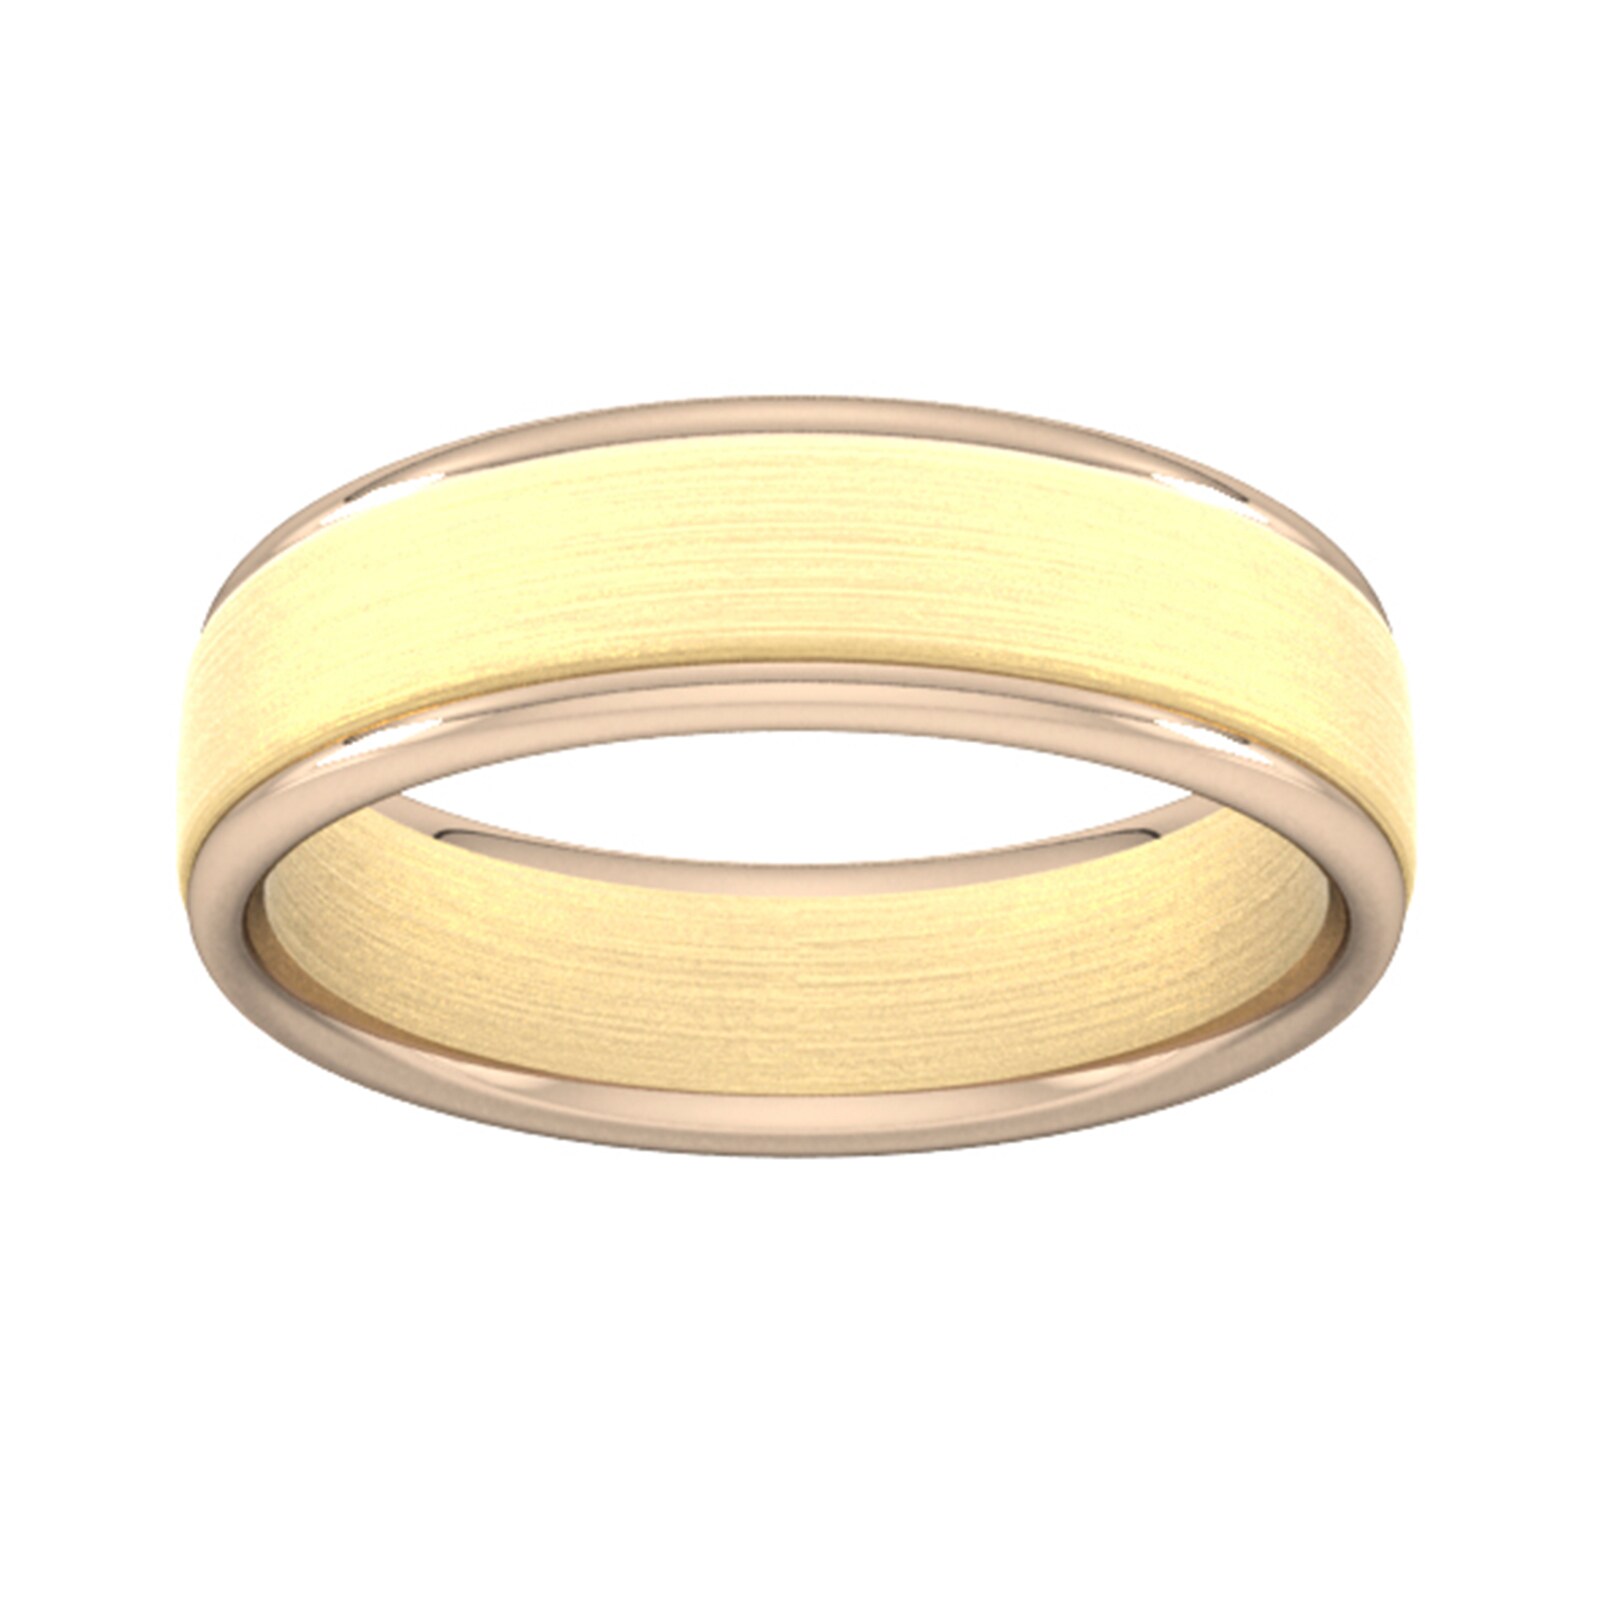 6mm Wedding Ring In 18 Carat Yellow & Rose Gold - Ring Size U